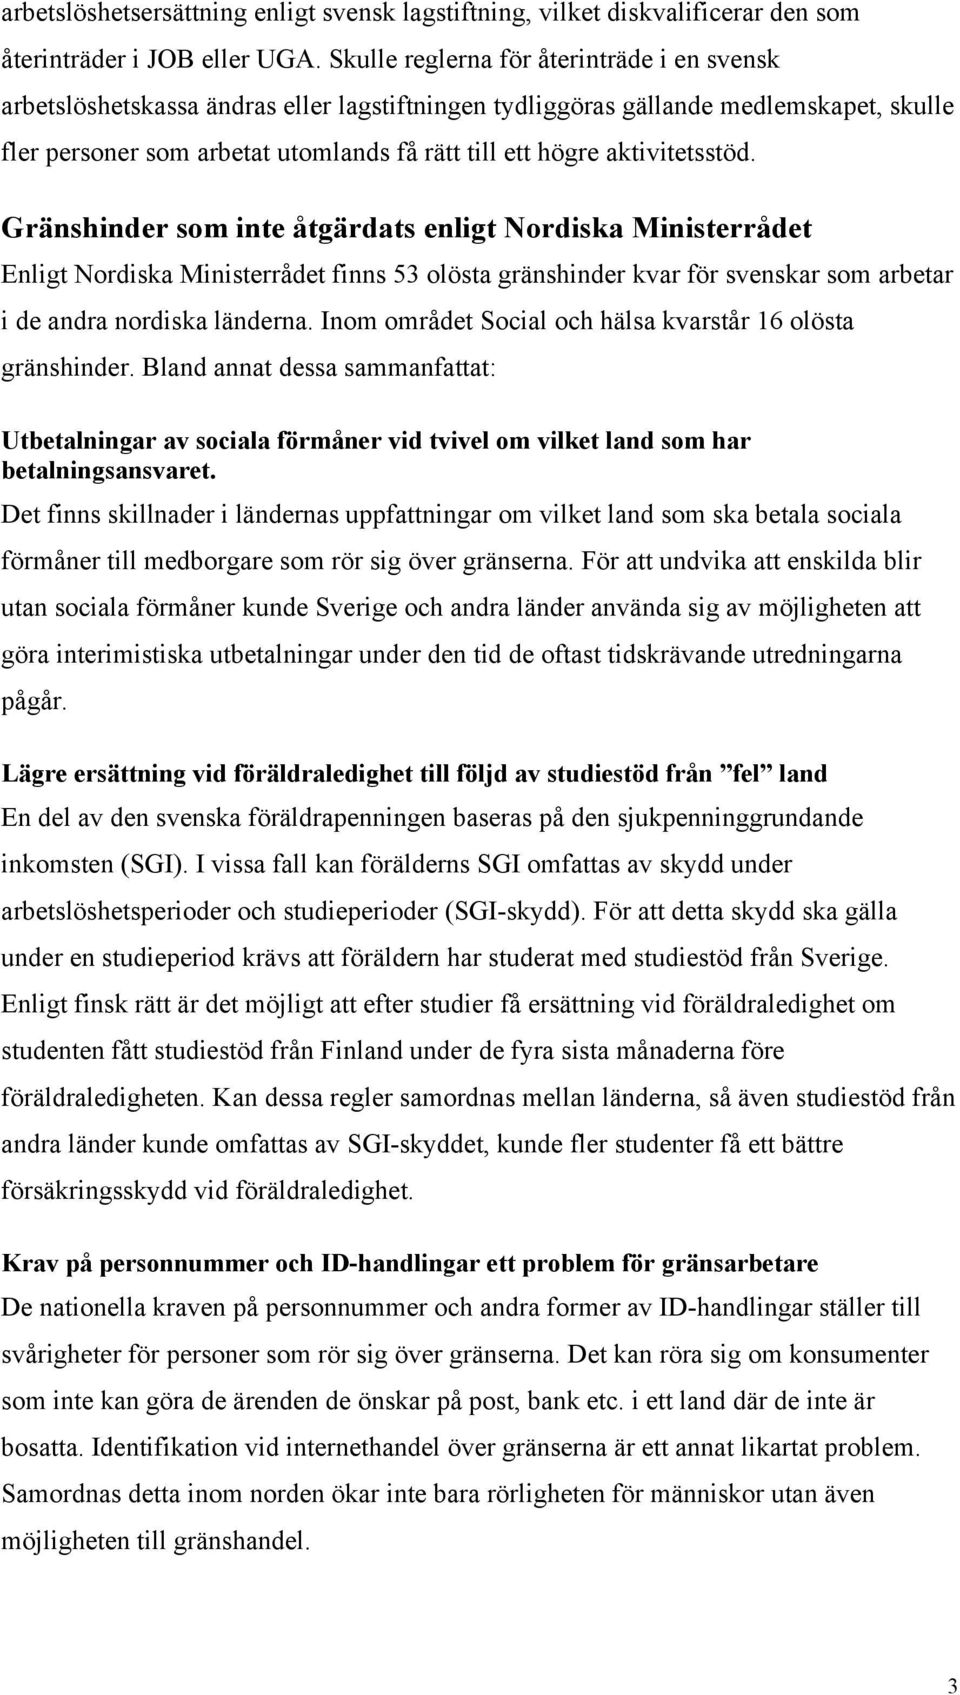 aktivitetsstöd. Gränshinder som inte åtgärdats enligt Nordiska Ministerrådet Enligt Nordiska Ministerrådet finns 53 olösta gränshinder kvar för svenskar som arbetar i de andra nordiska länderna.